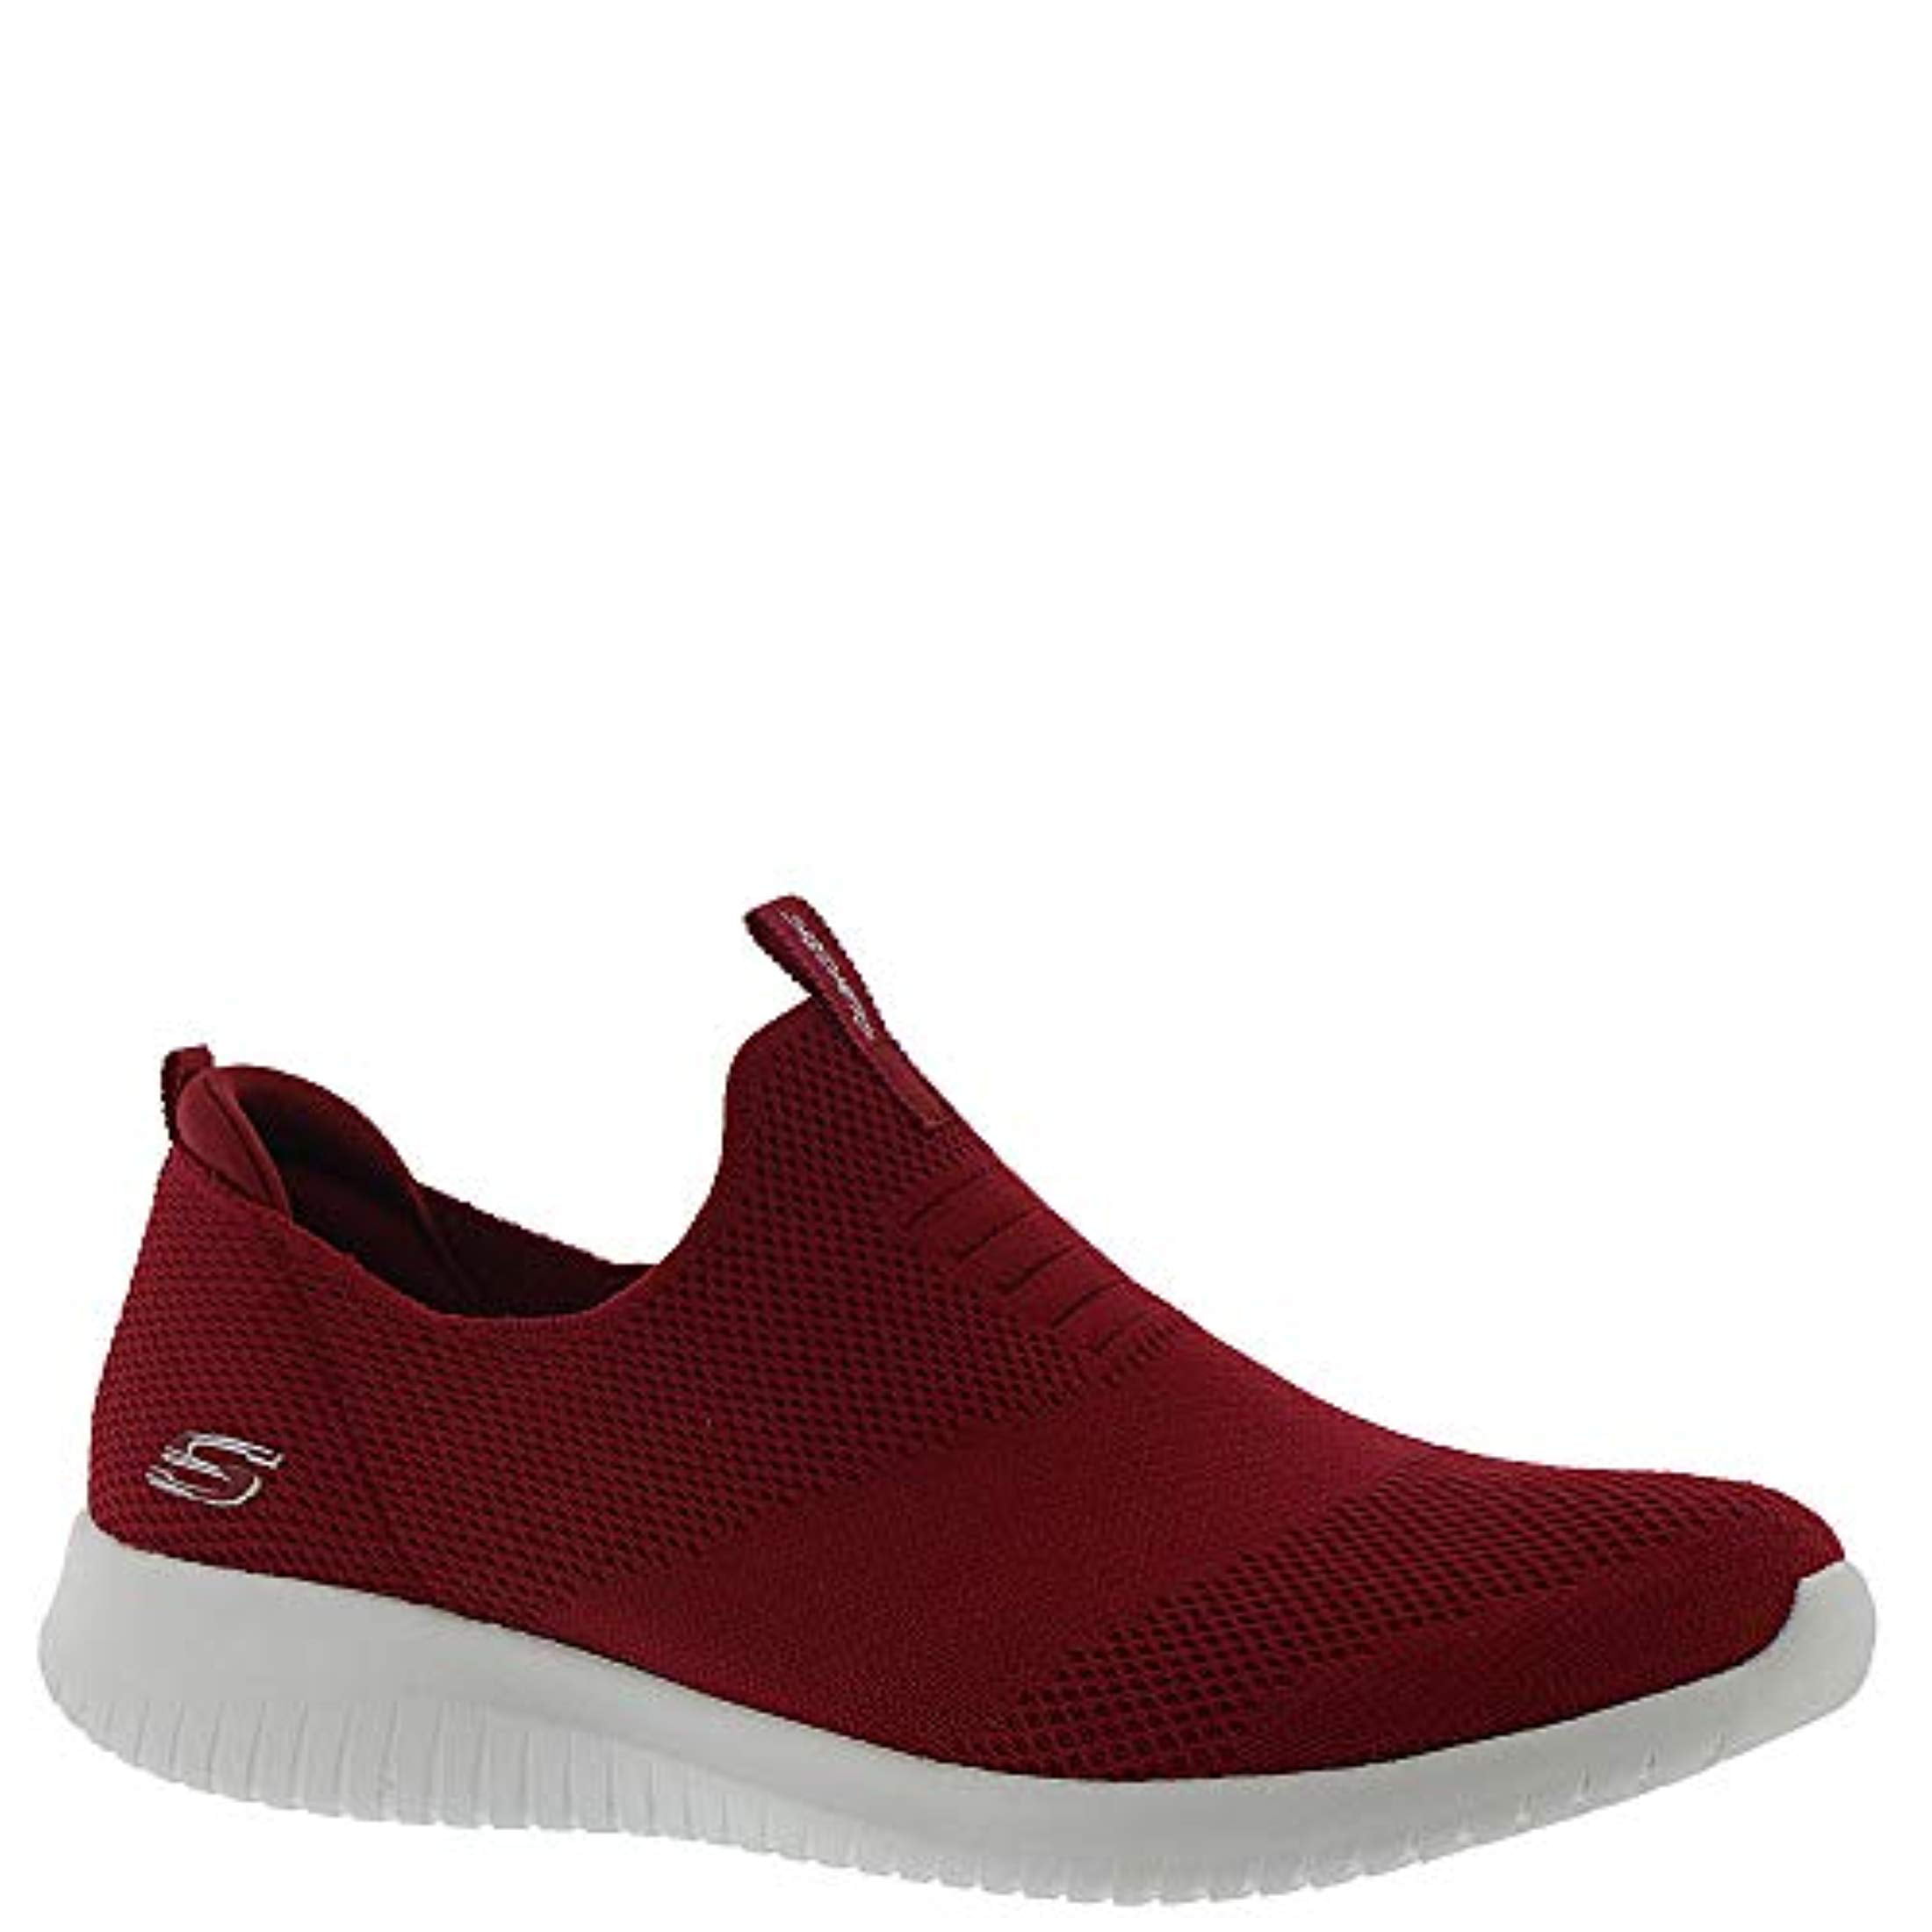 Womens Slip On Walking Sneakers Red 